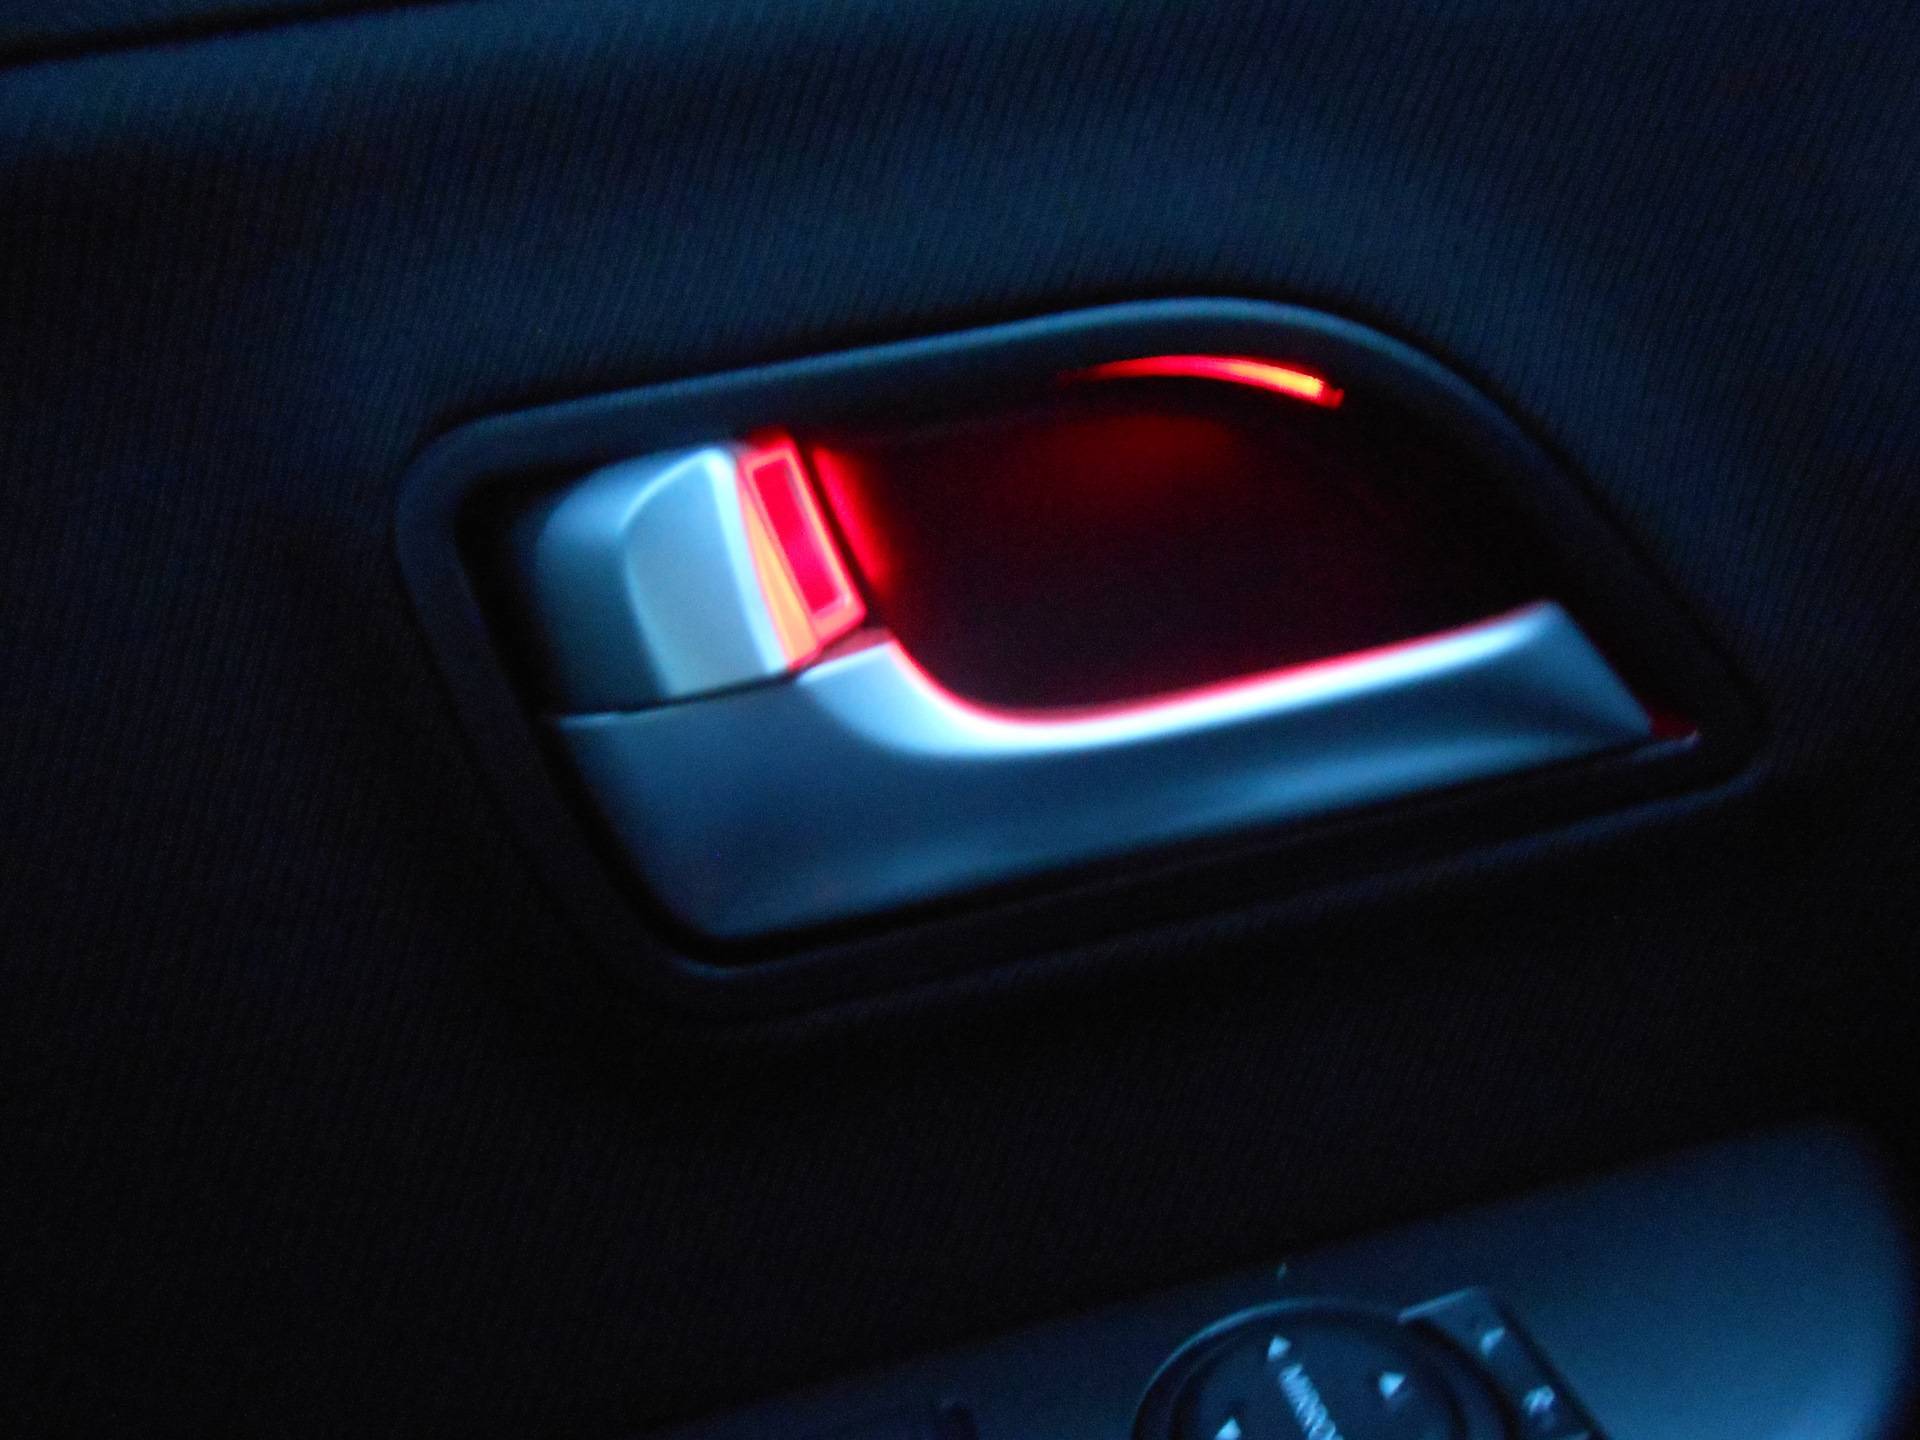 Как сделать подсветку в ноги в машине